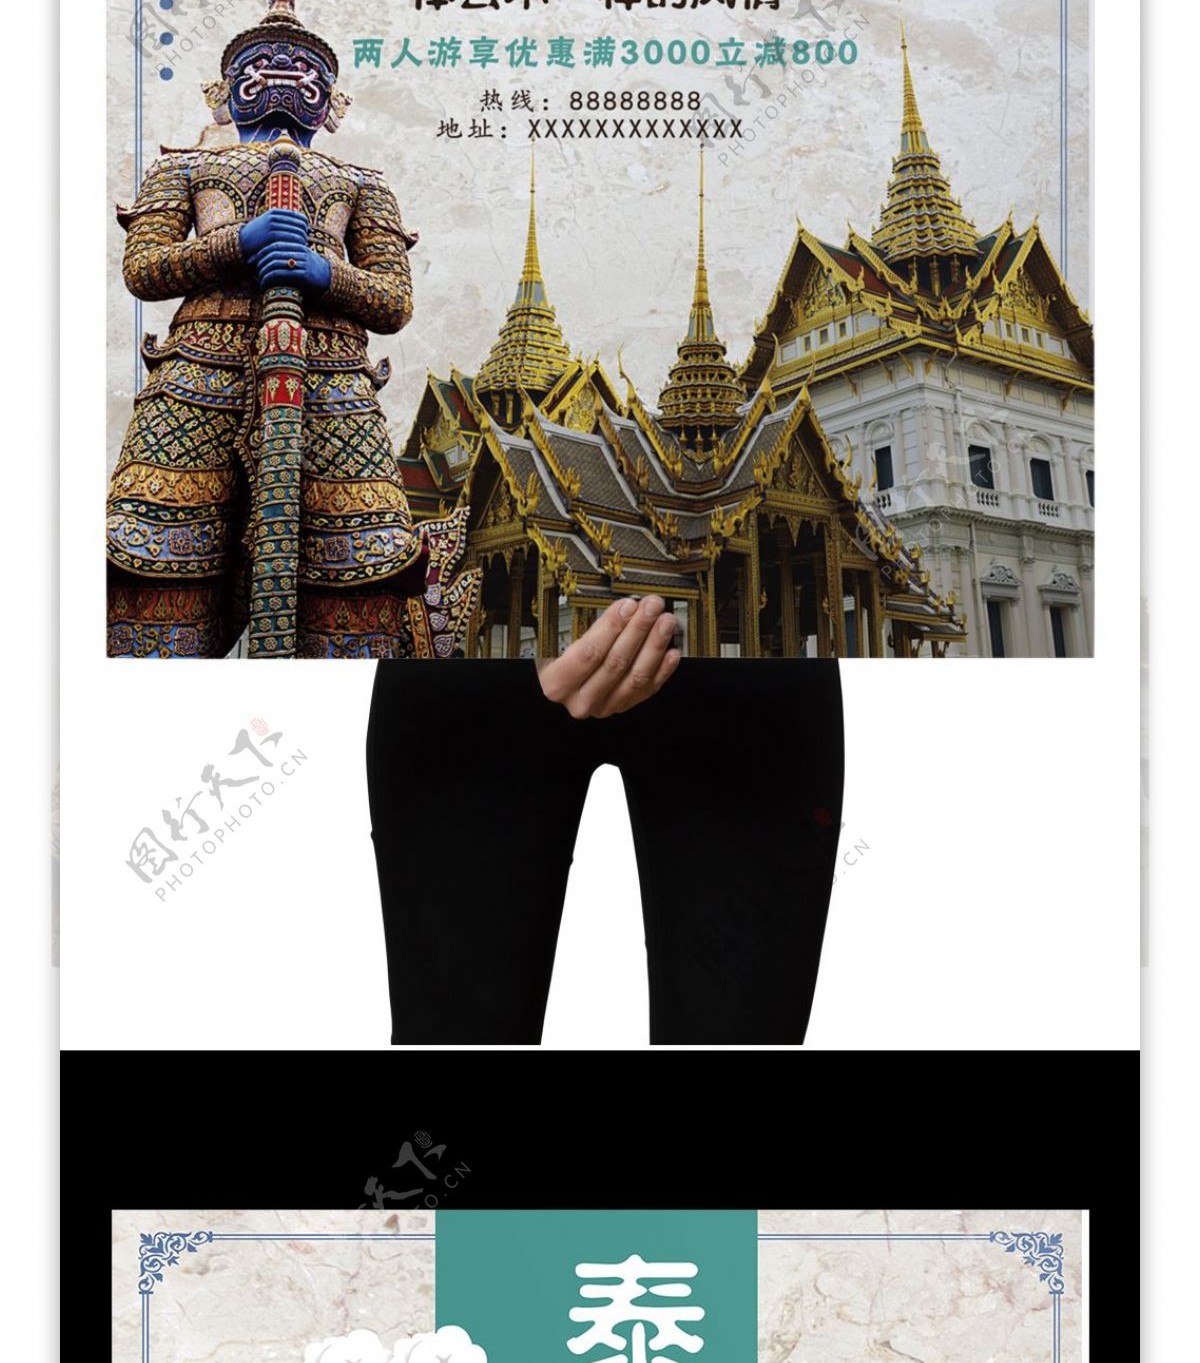 清新时尚泰国旅行宣传海报设计